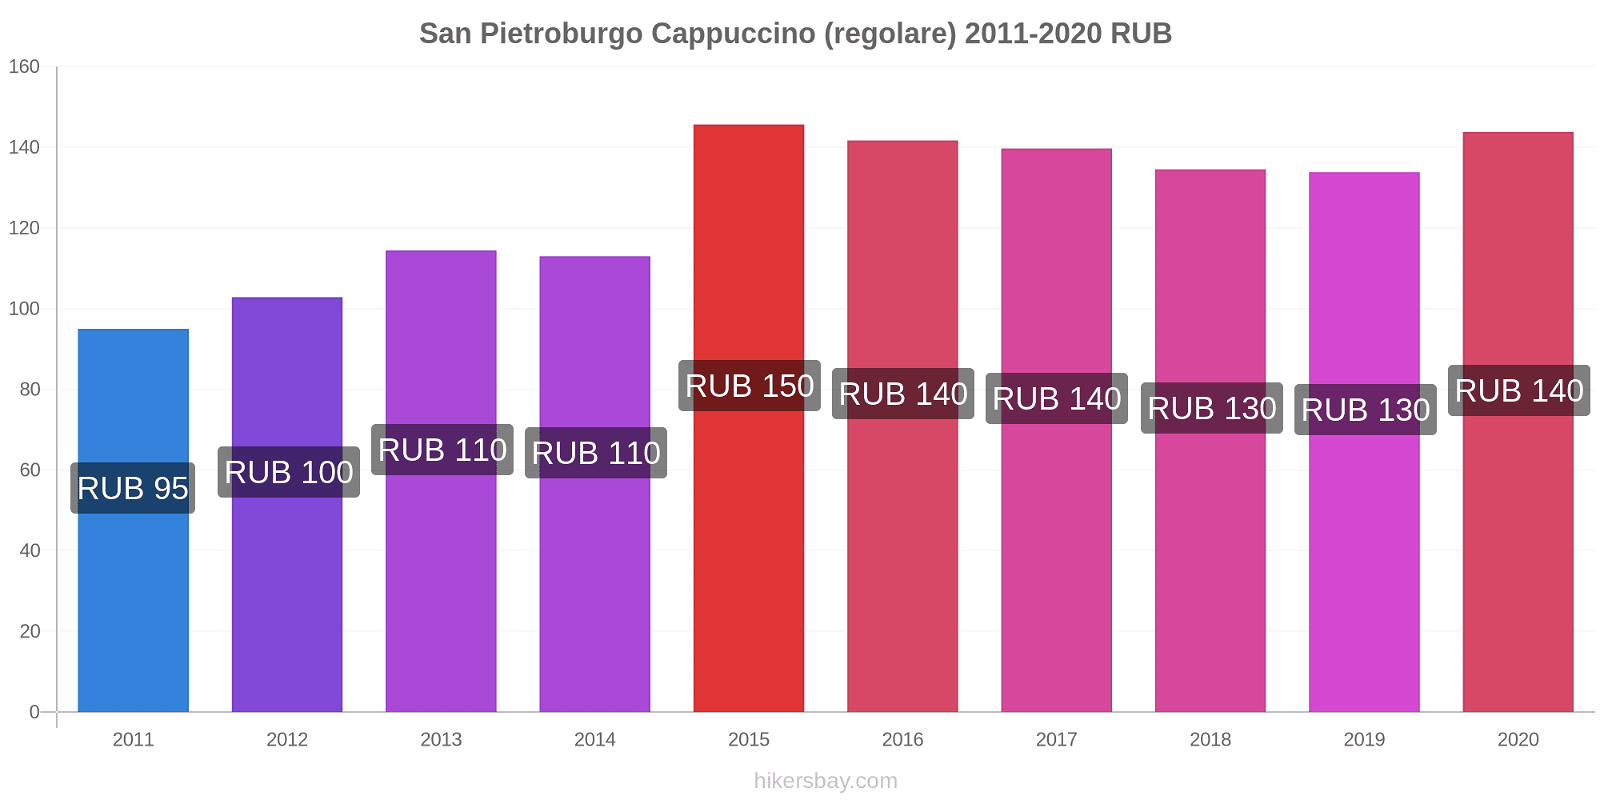 San Pietroburgo variazioni di prezzo Cappuccino (normale) hikersbay.com